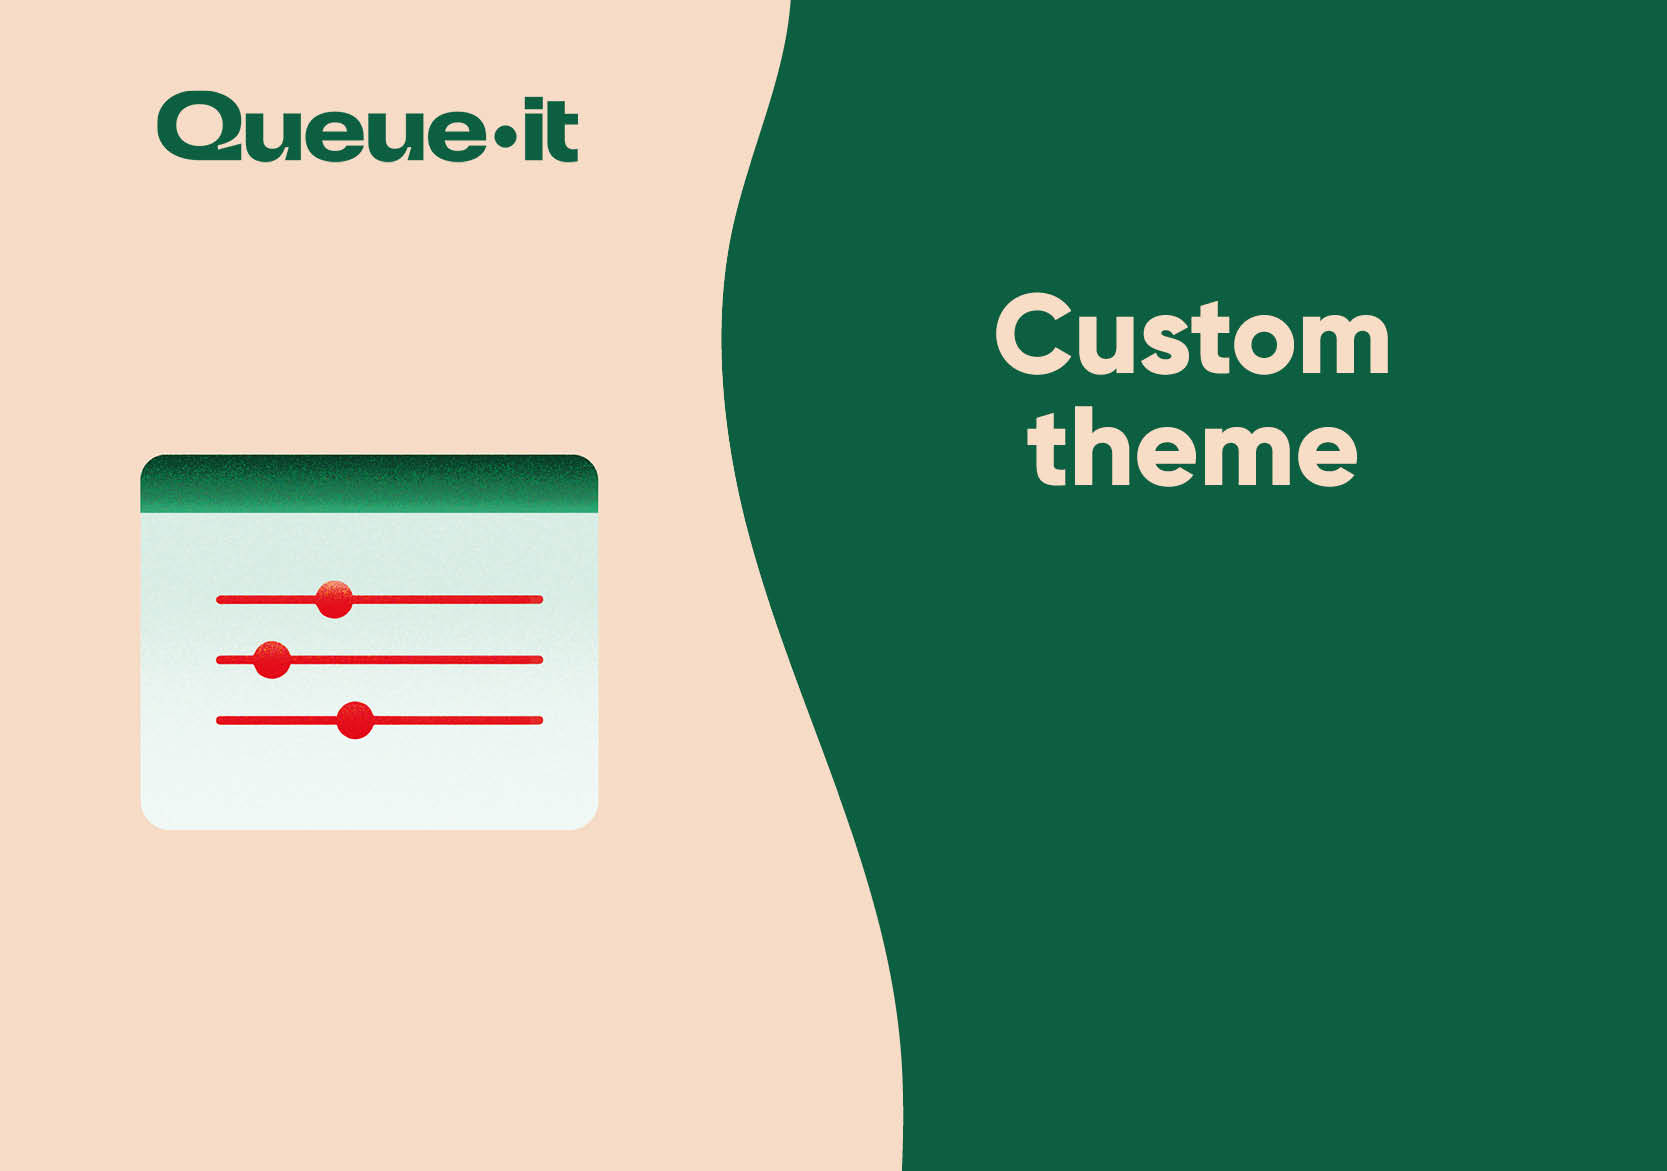 Queue-it Custom Theme white paper